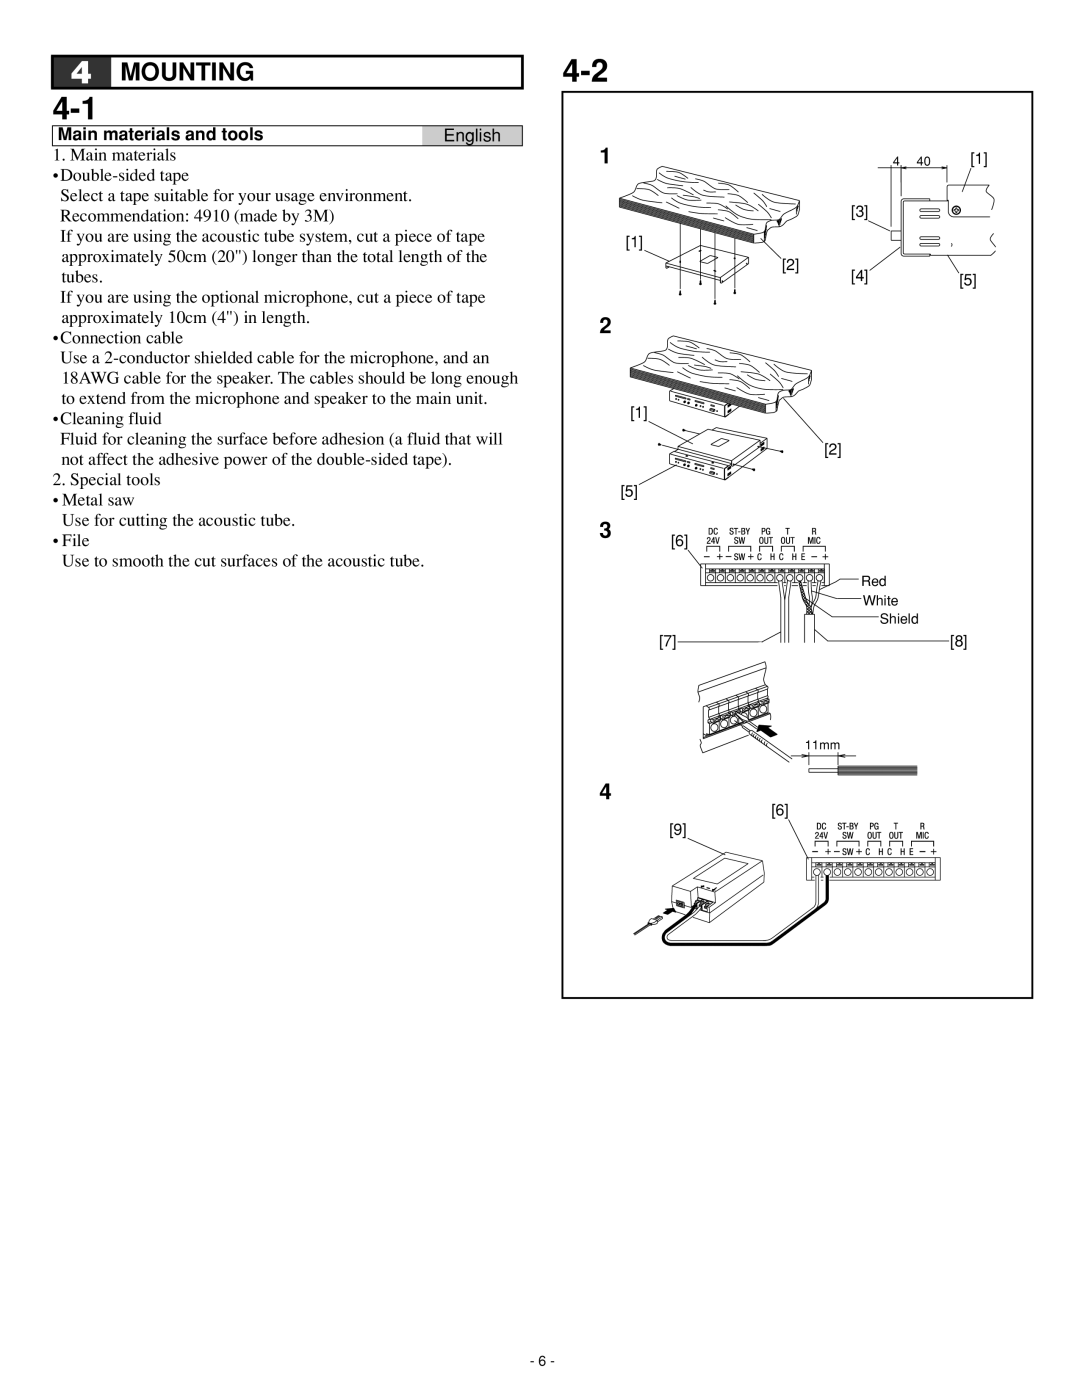 Aiphone Iai-100, IME-100, IME-150, ISE-100, IMU-100, IAX-100 operation manual Mounting, Main materials and tools, English 